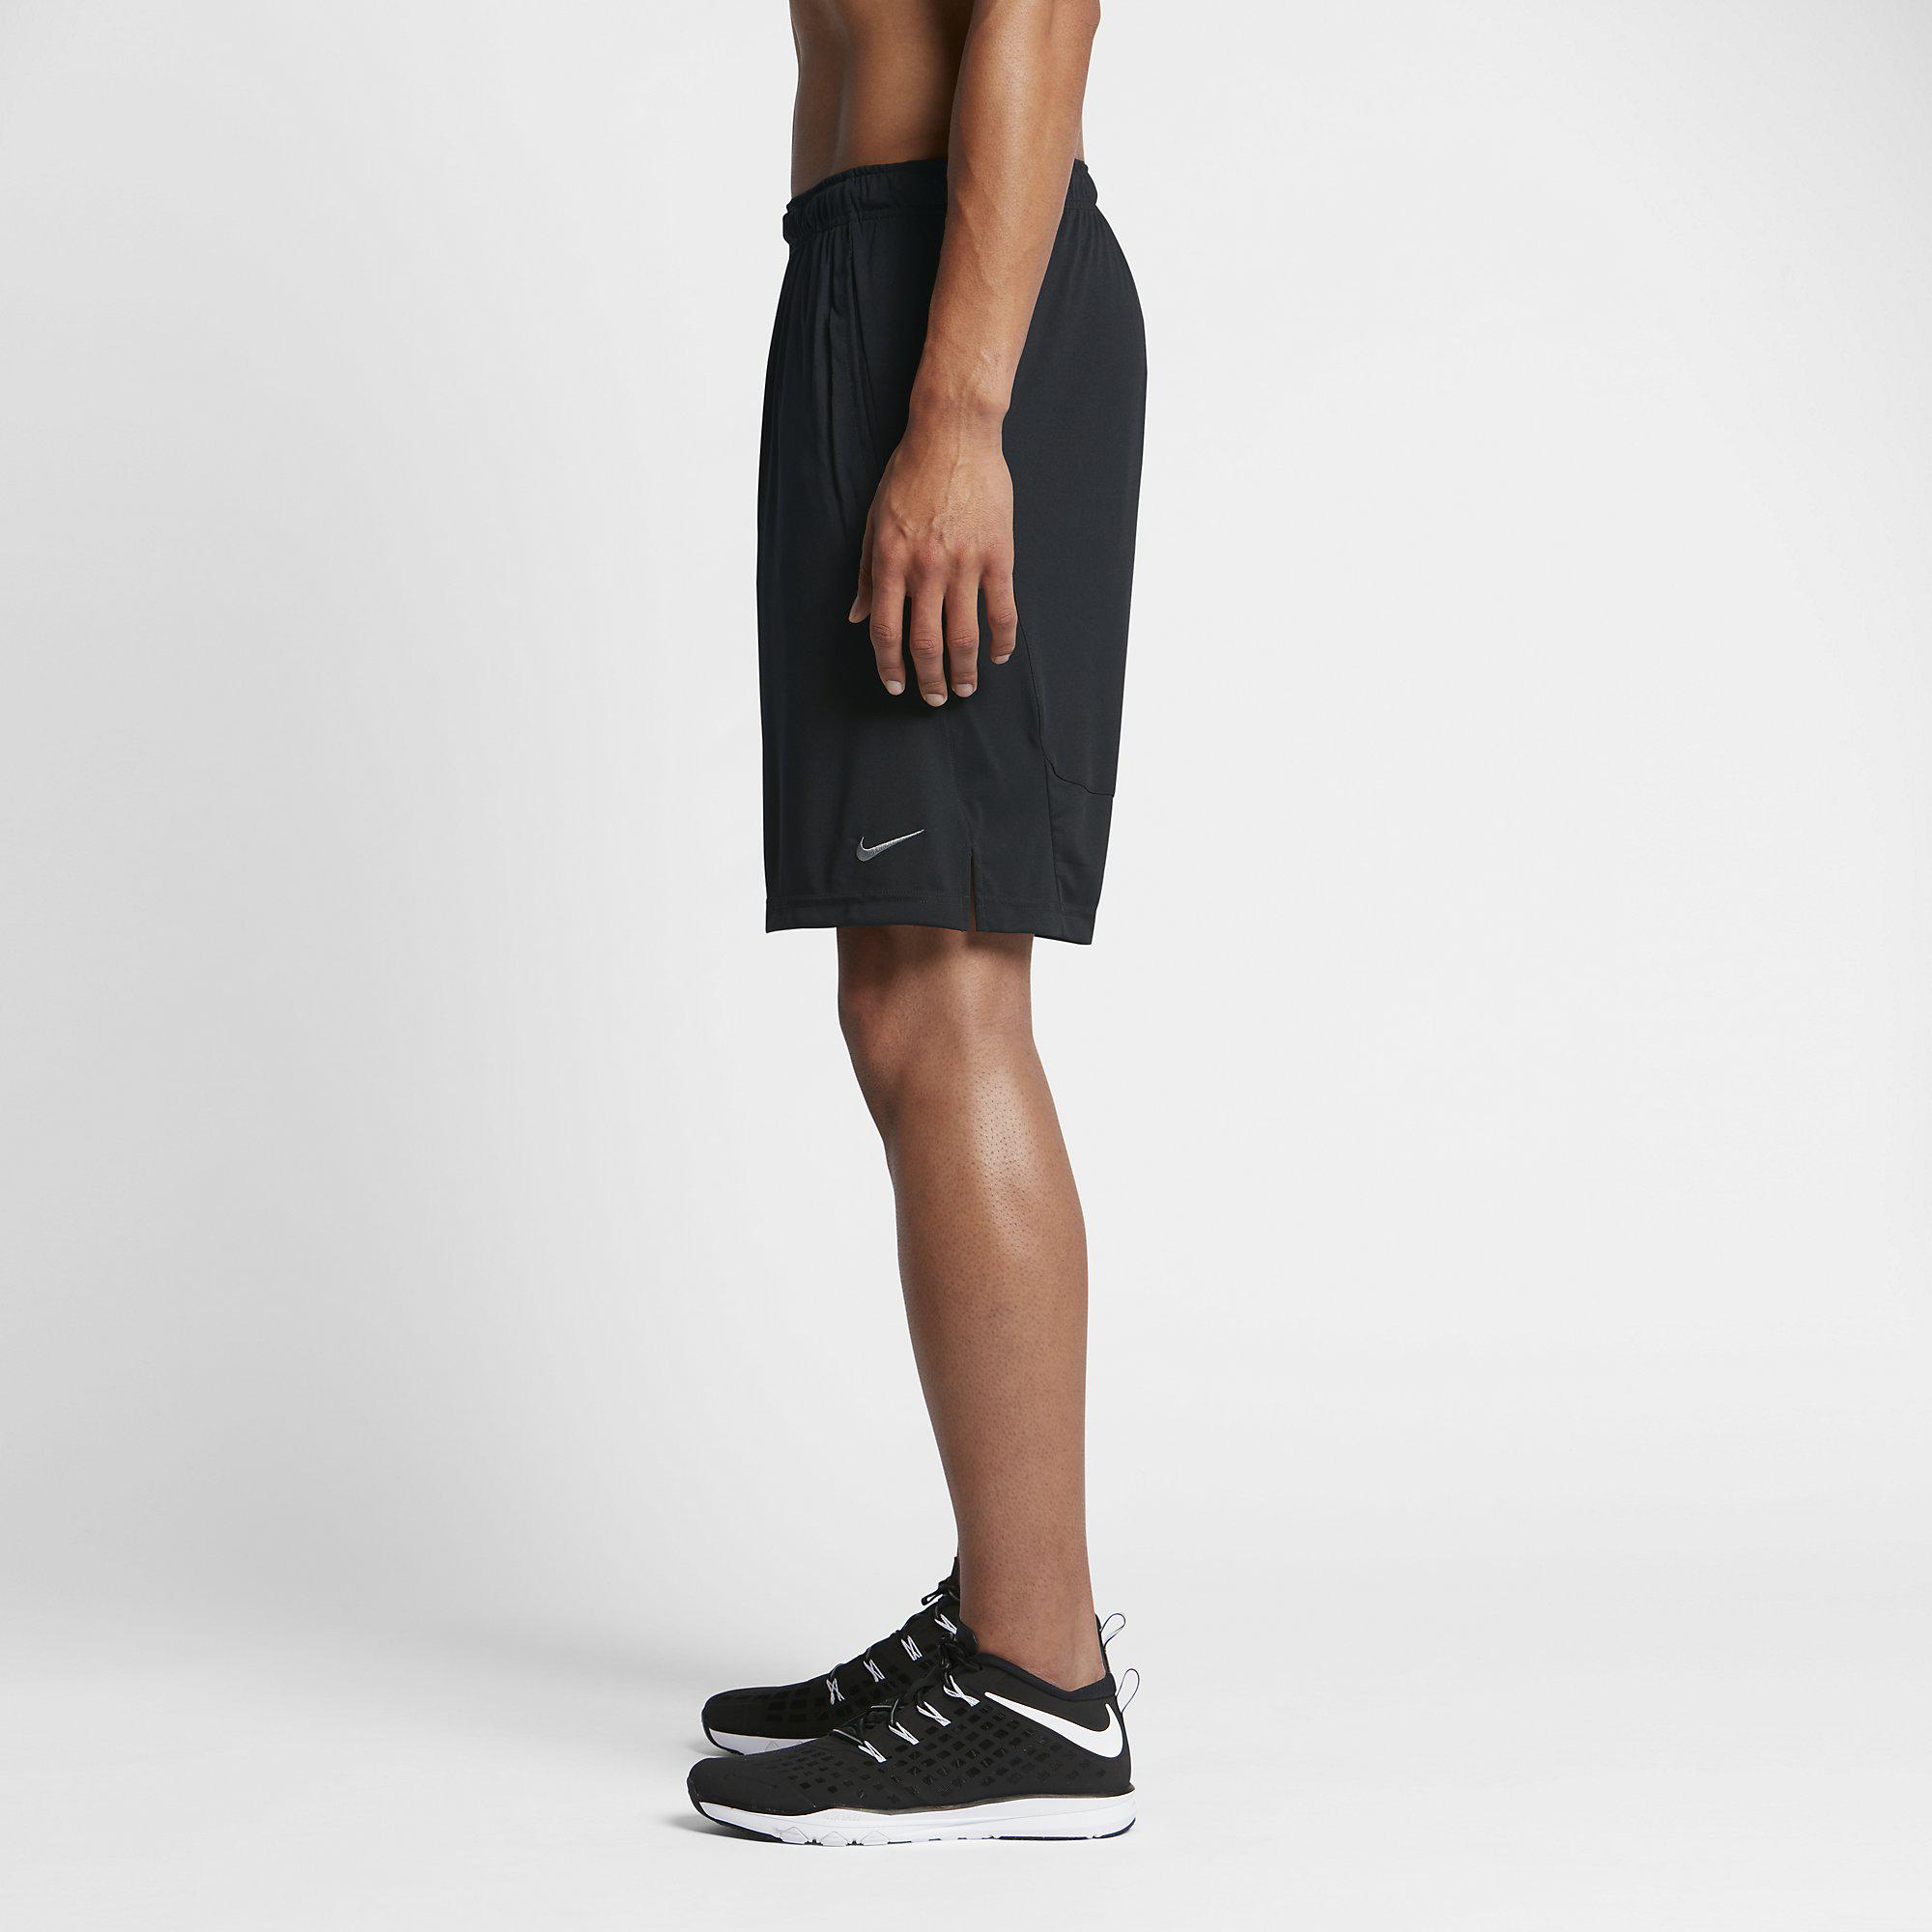 Nike Mens Dry Training Shorts - Black - Tennisnuts.com